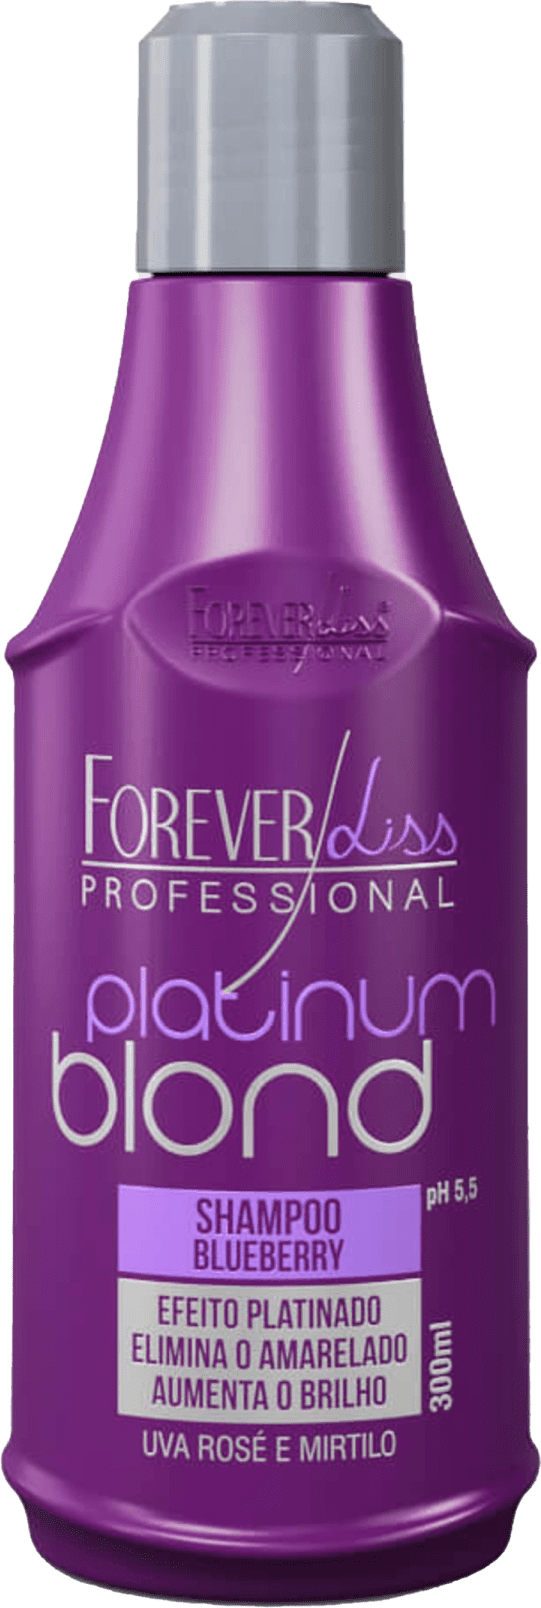 Yesp Cosméticos  Sua Loja Completa de Beleza - Shampoo Platinum